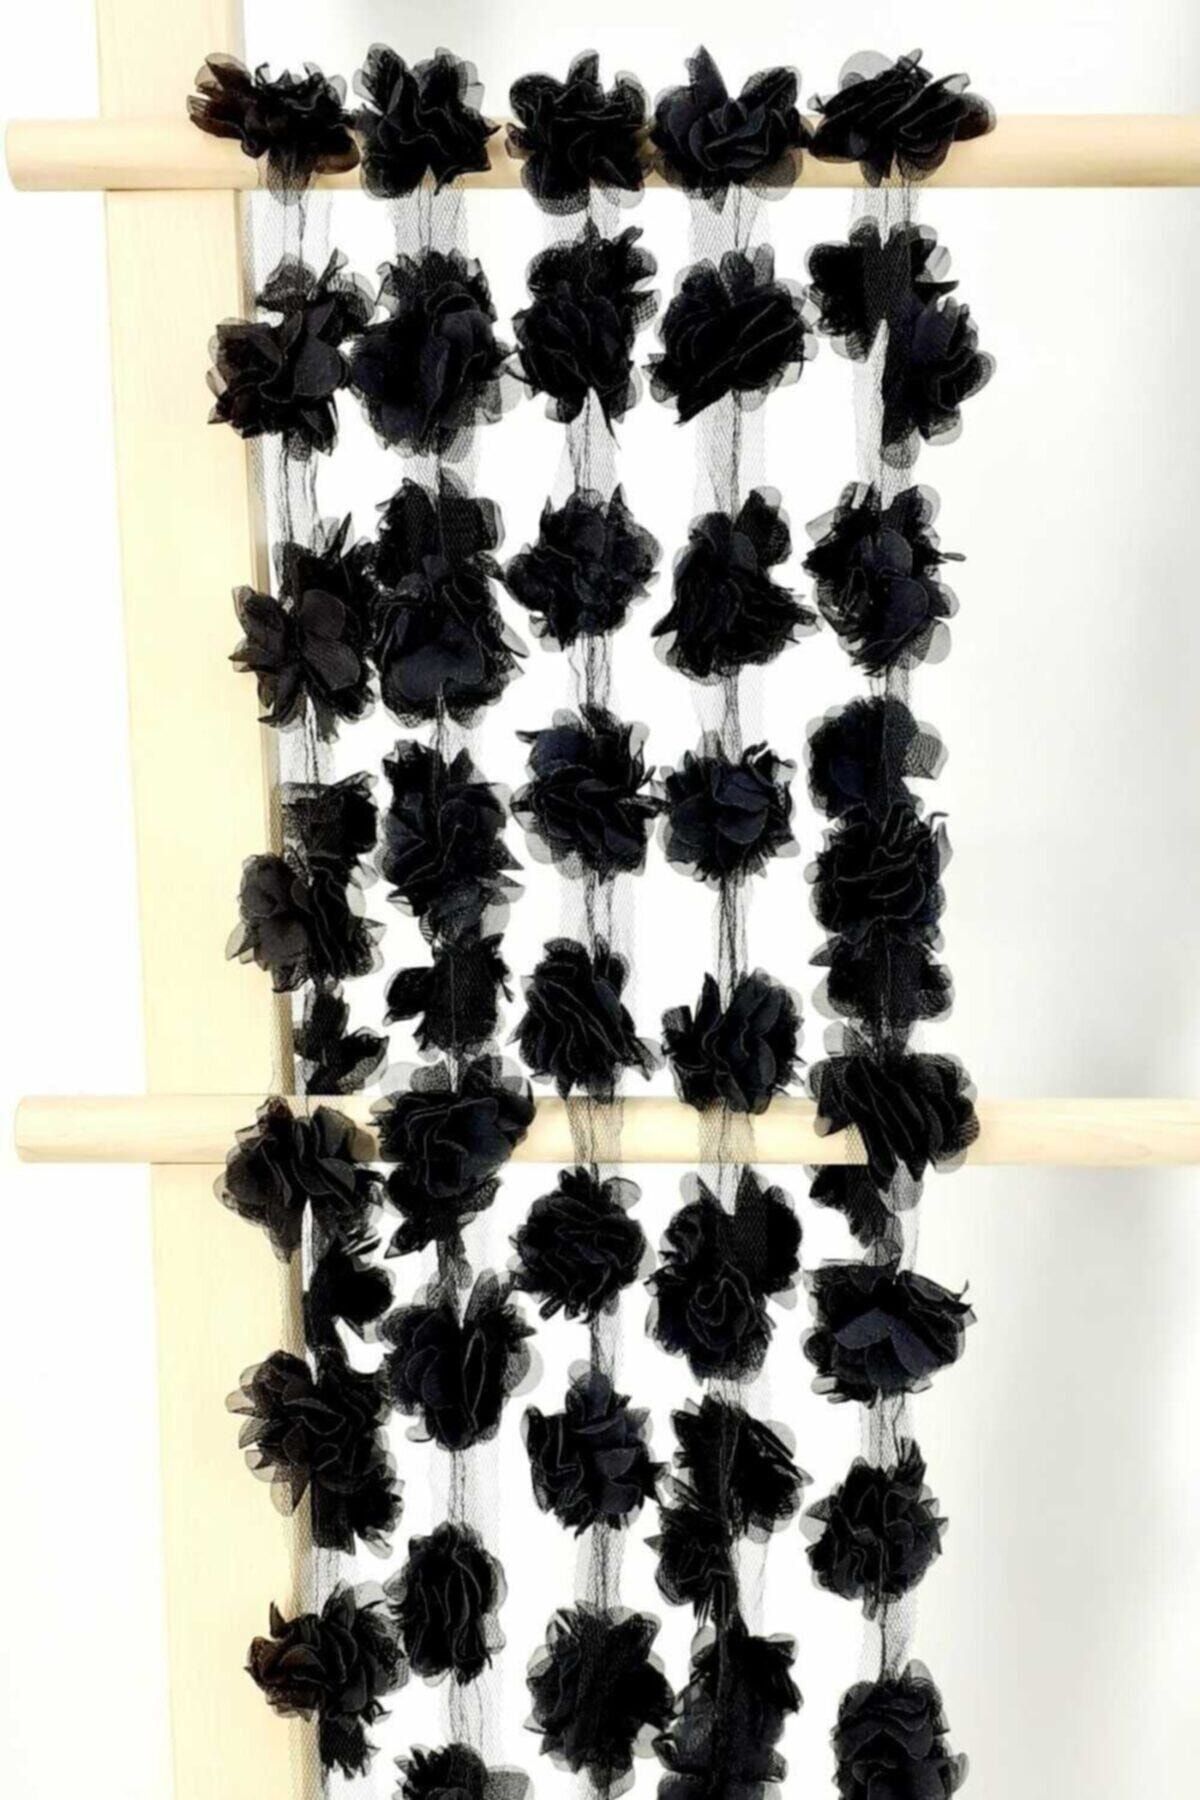 Aker Hediyelik Siyah 1m Gül Lazer Kesim Çiçek 12-13 Adet Organze Tül Kenar Süsü Tekstil Tasarım Kumaşı Yapay Süs